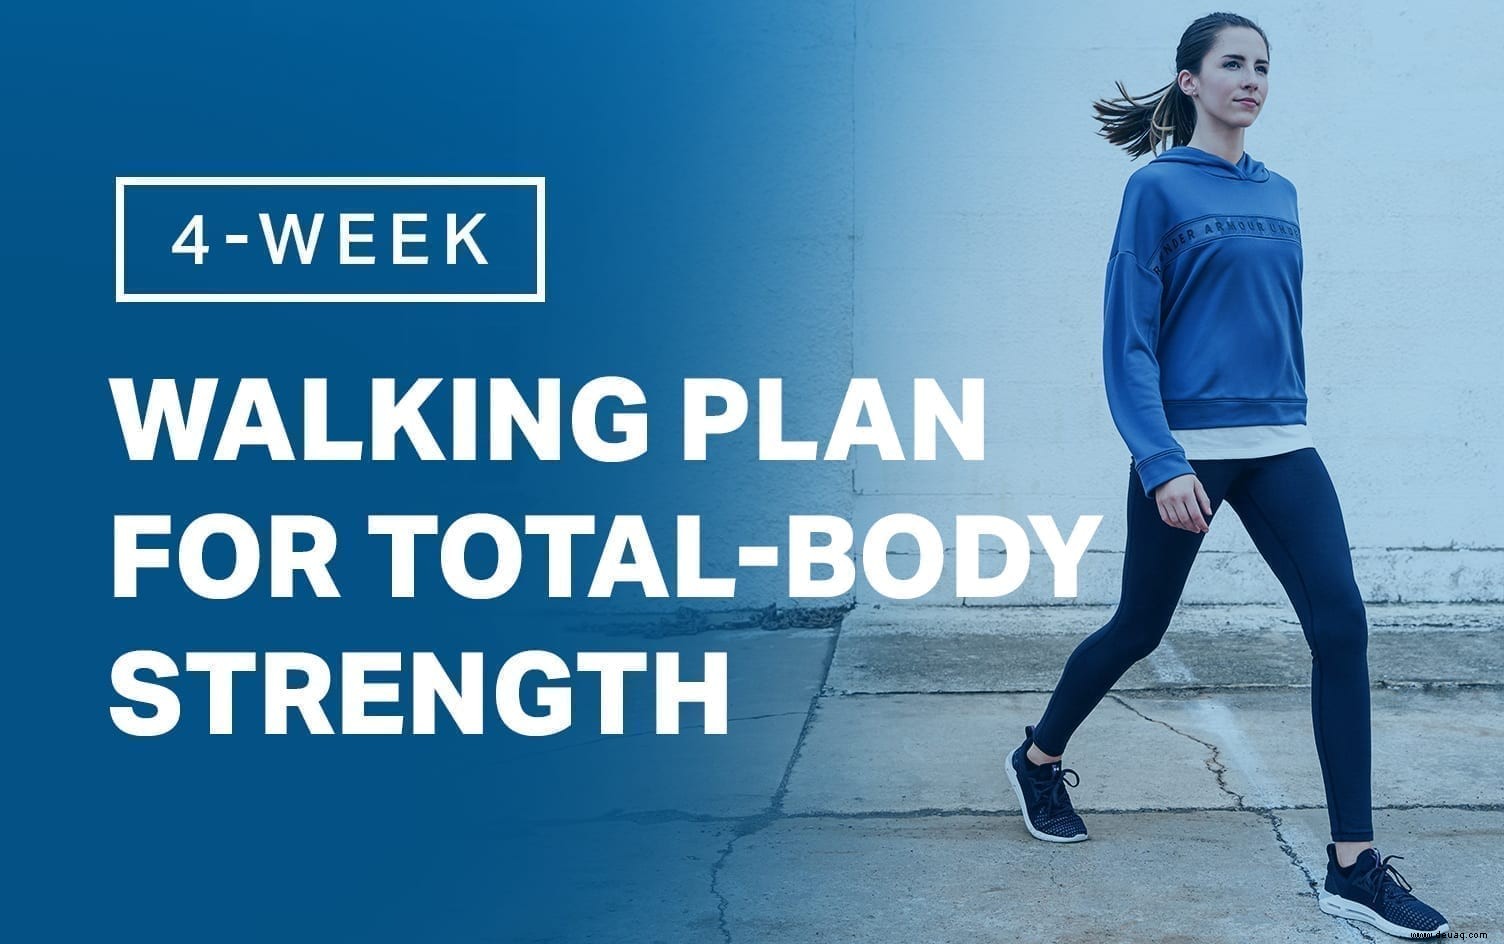 4-Wochen-Walking-Plan für Ganzkörperkraft 